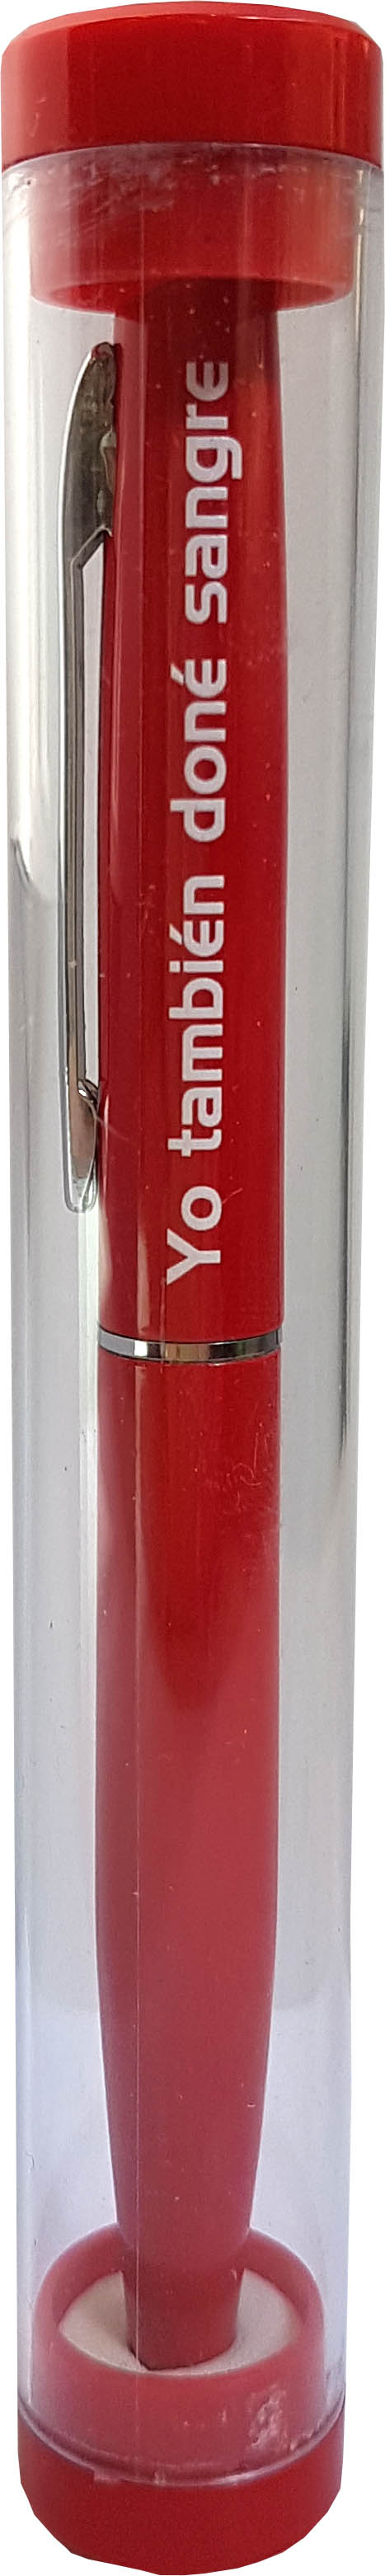 Bolígrafo de aluminio en tubo acrílico transparente